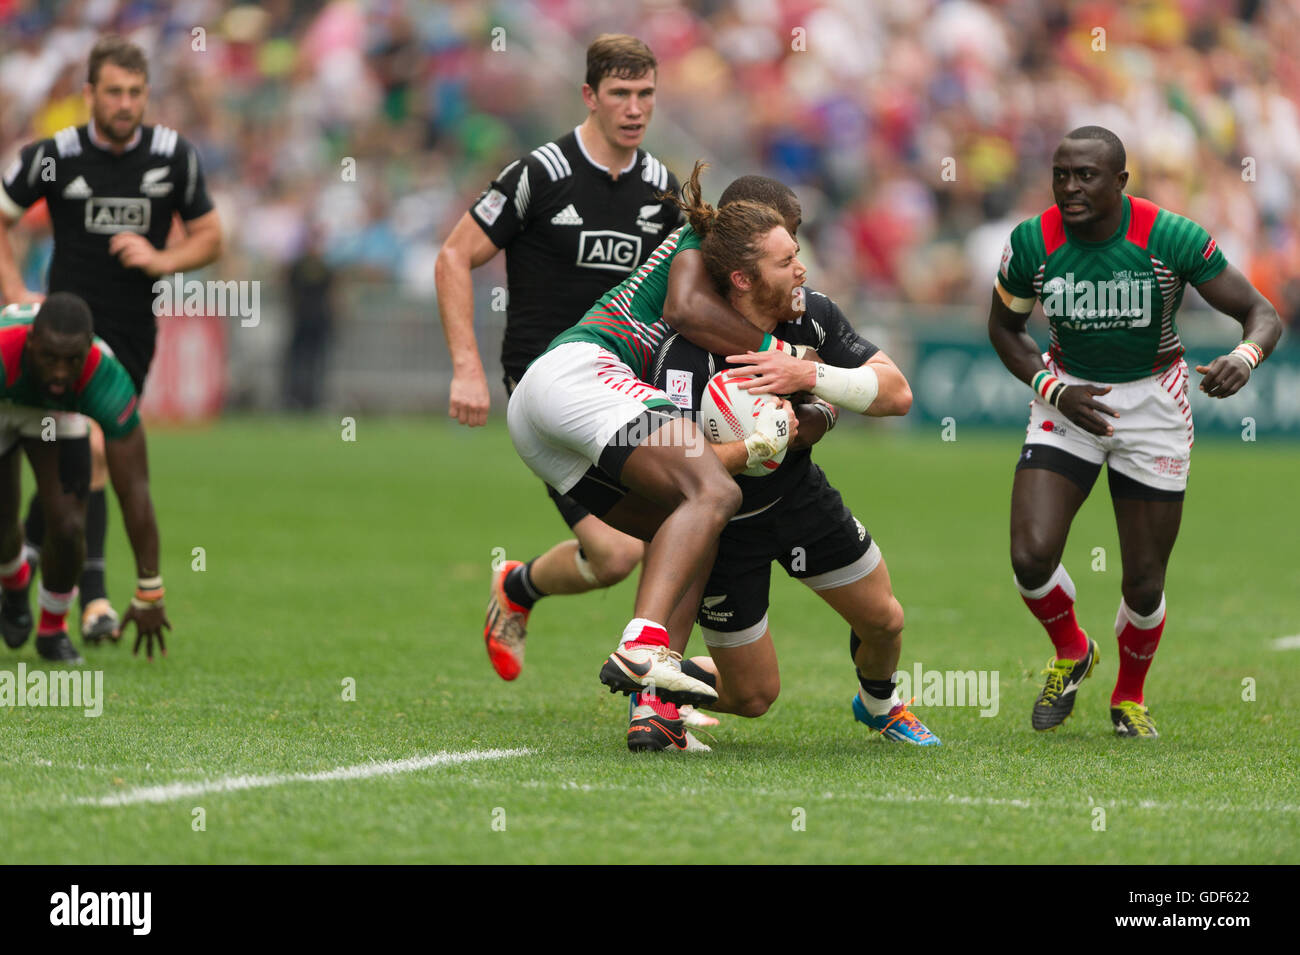 Rugby Sevens action, Collins Injera of Kenya, tackles Gillies Kaka of New Zealand, Hong Kong Stadium, China. Stock Photo